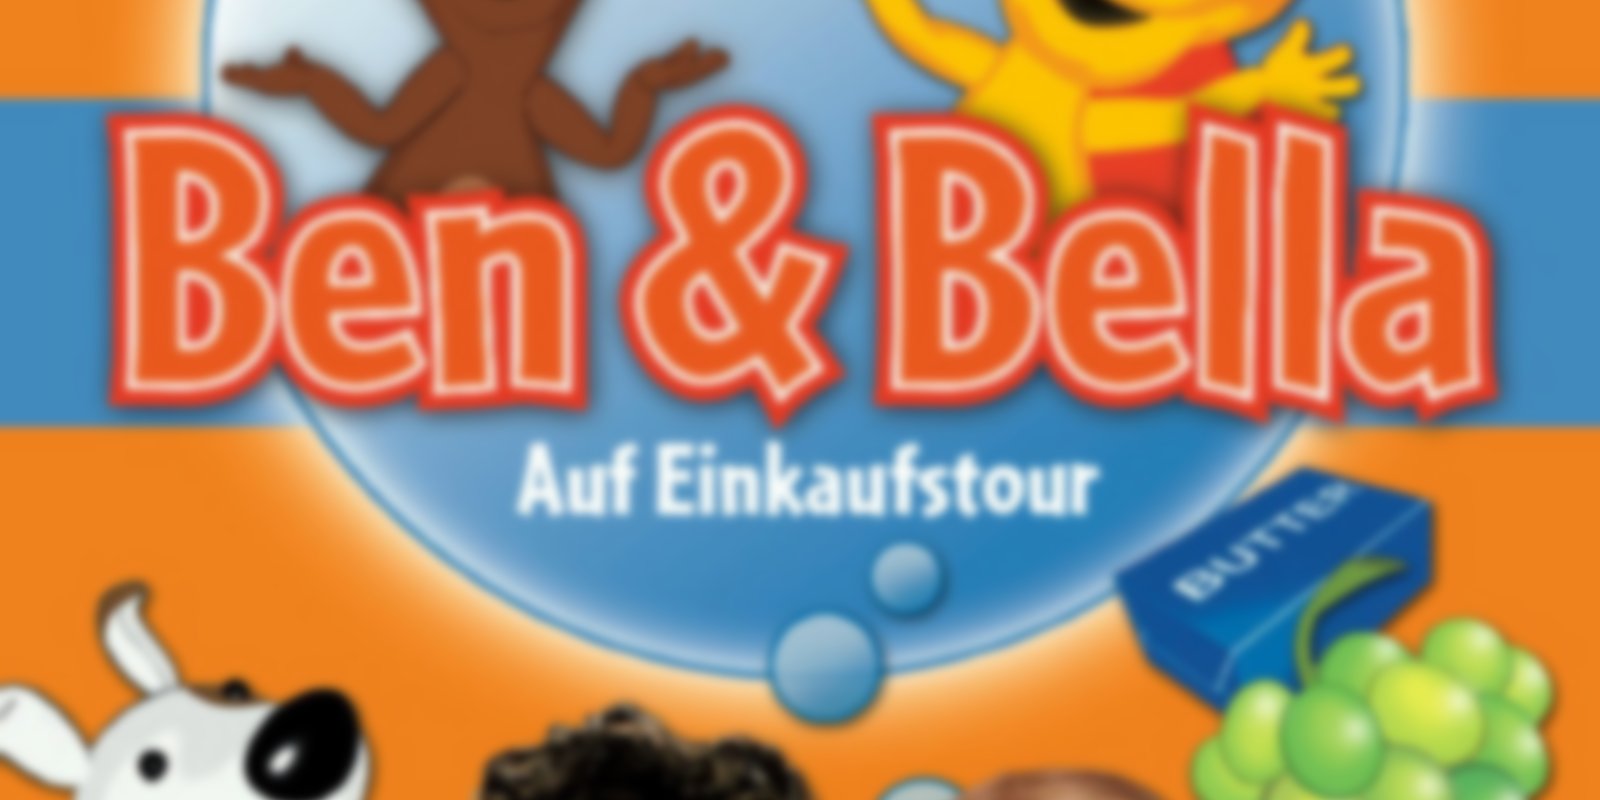 Ben & Bellas Sprachenwelt 2 - Auf Einkaufstour